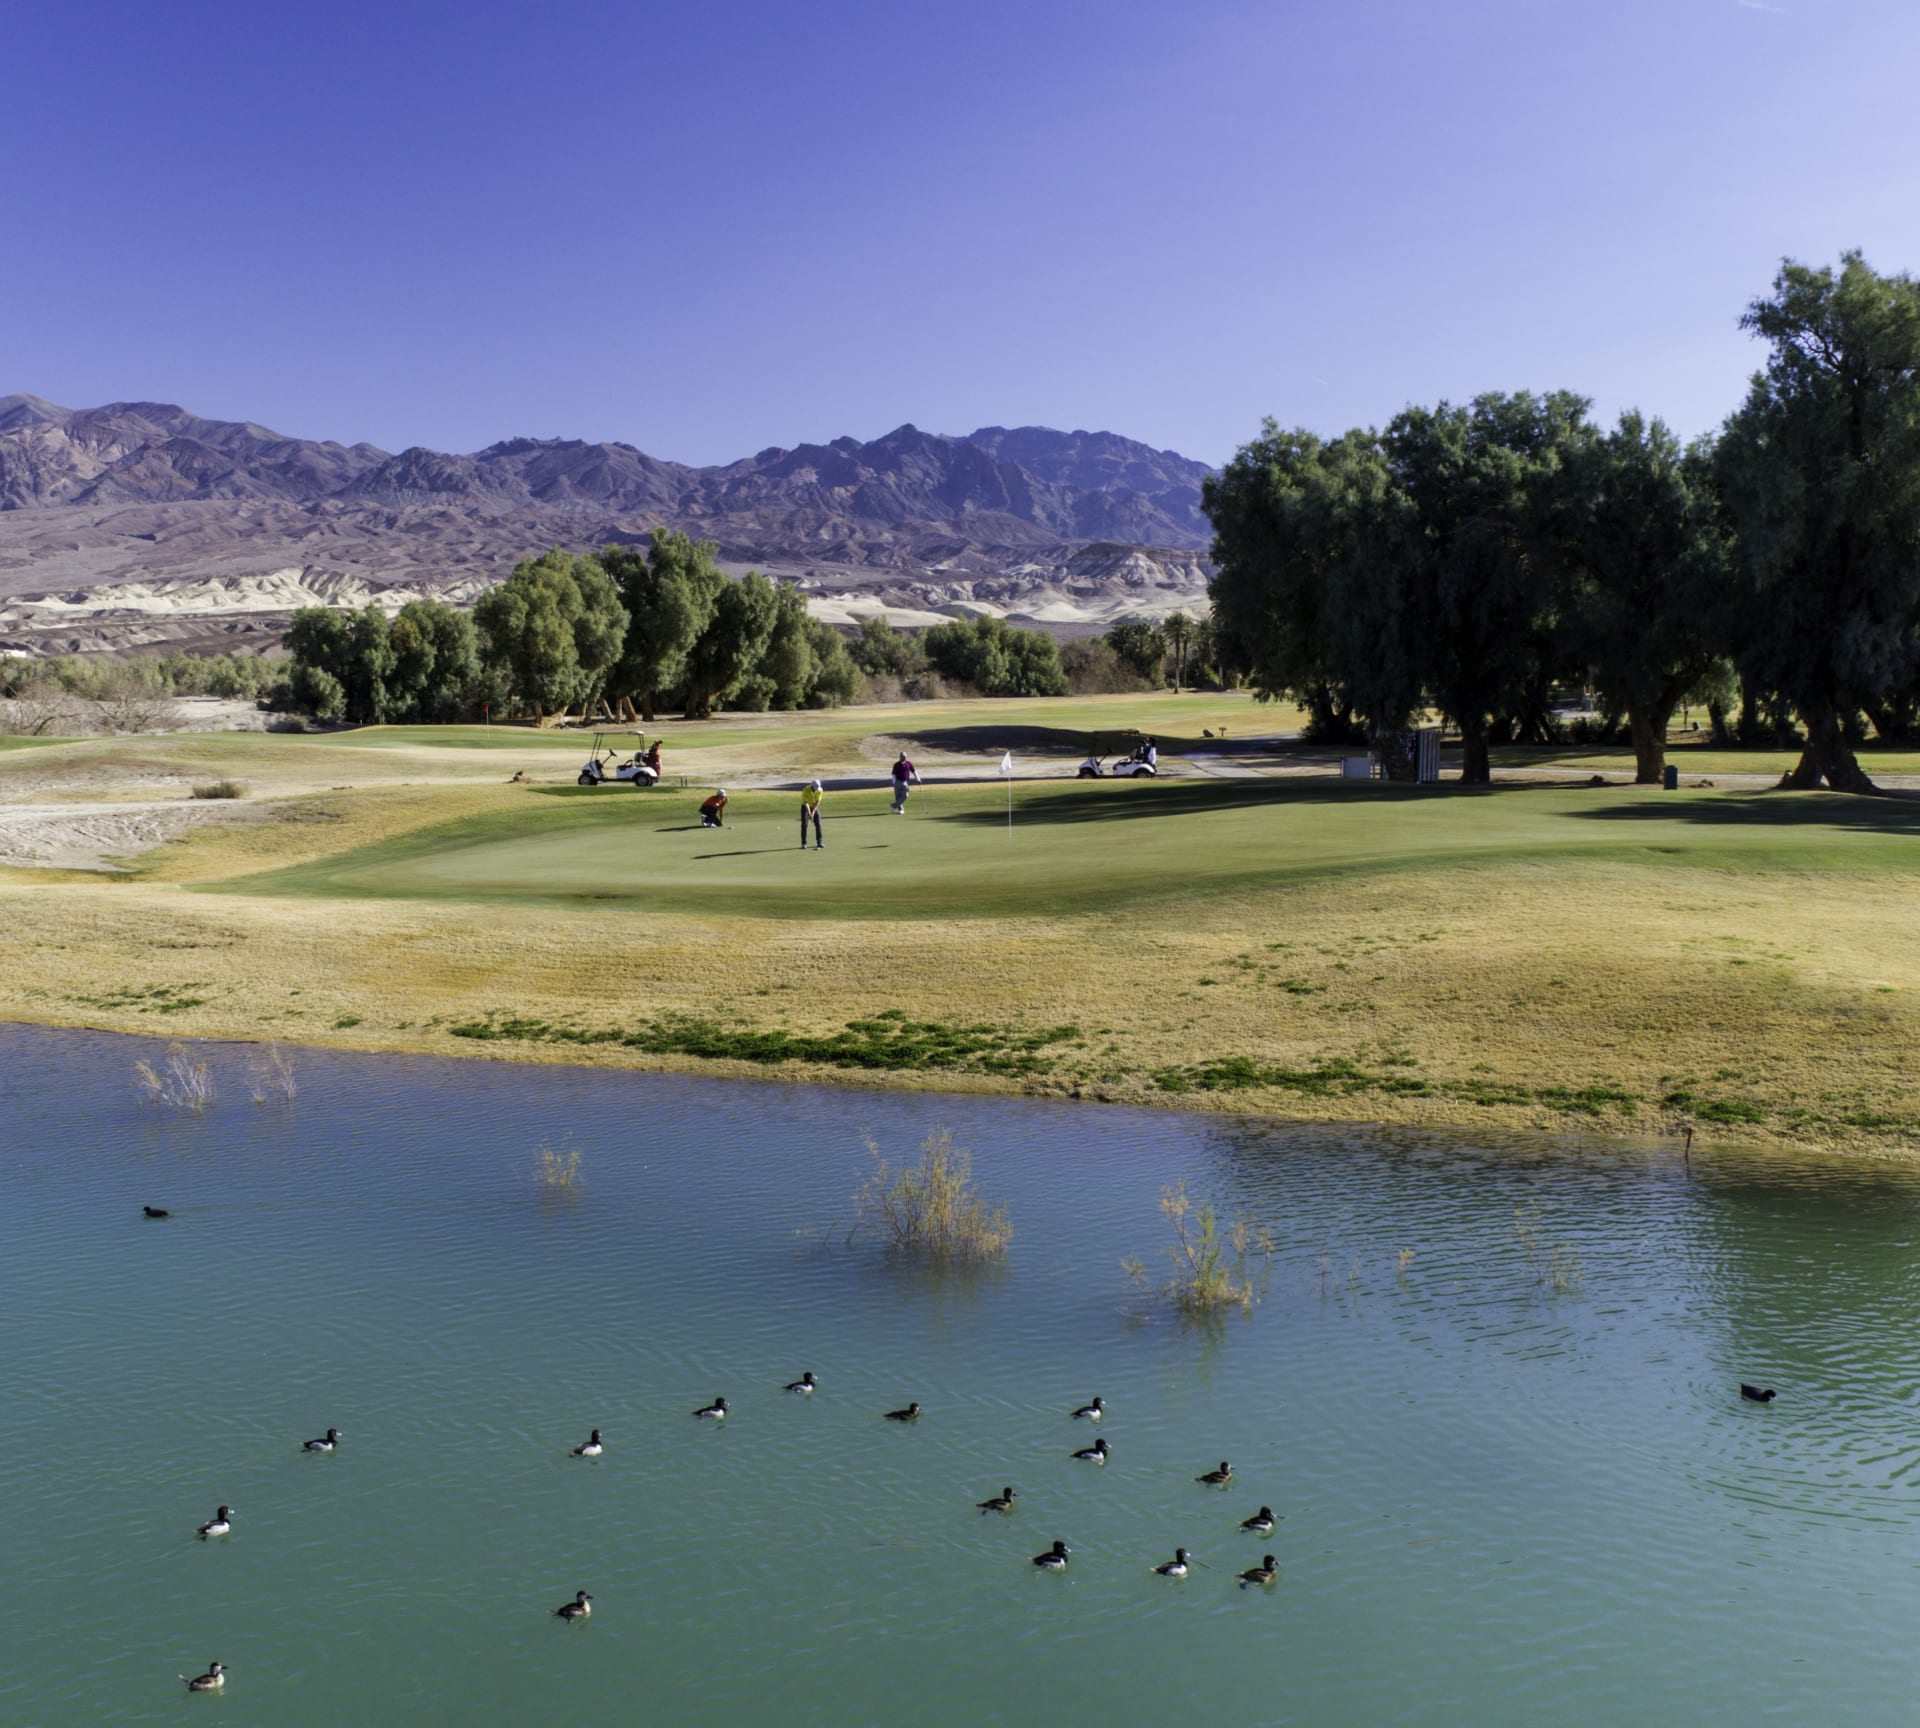 حير الكثيرون.. كيف يختلف لعب الغولف في وادي الموت بأمريكا؟